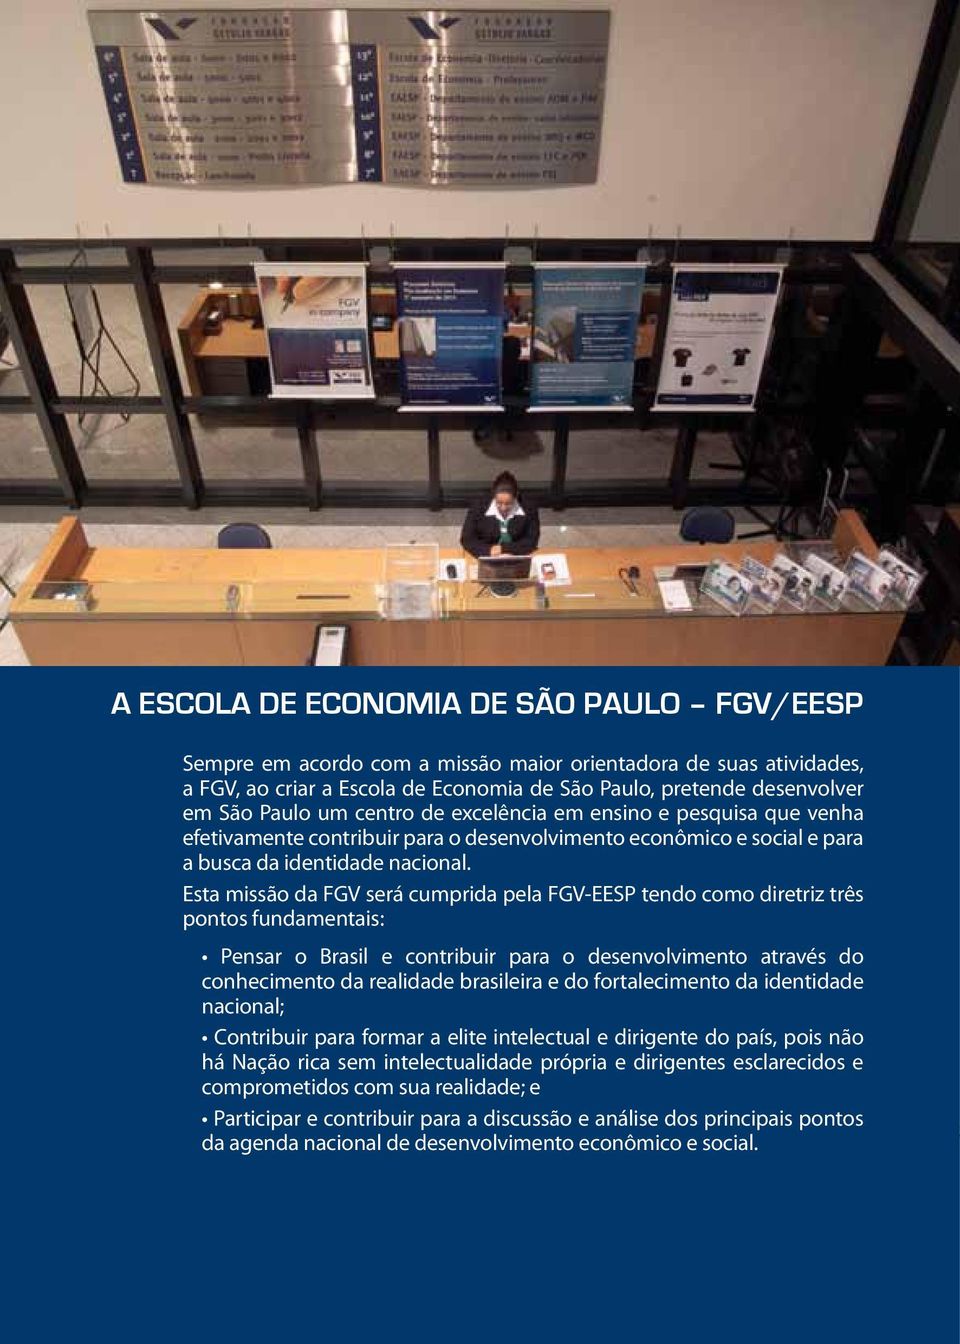 Esta missão da FGV será cumprida pela FGV-EESP tendo como diretriz três pontos fundamentais: Pensar o Brasil e contribuir para o desenvolvimento através do conhecimento da realidade brasileira e do